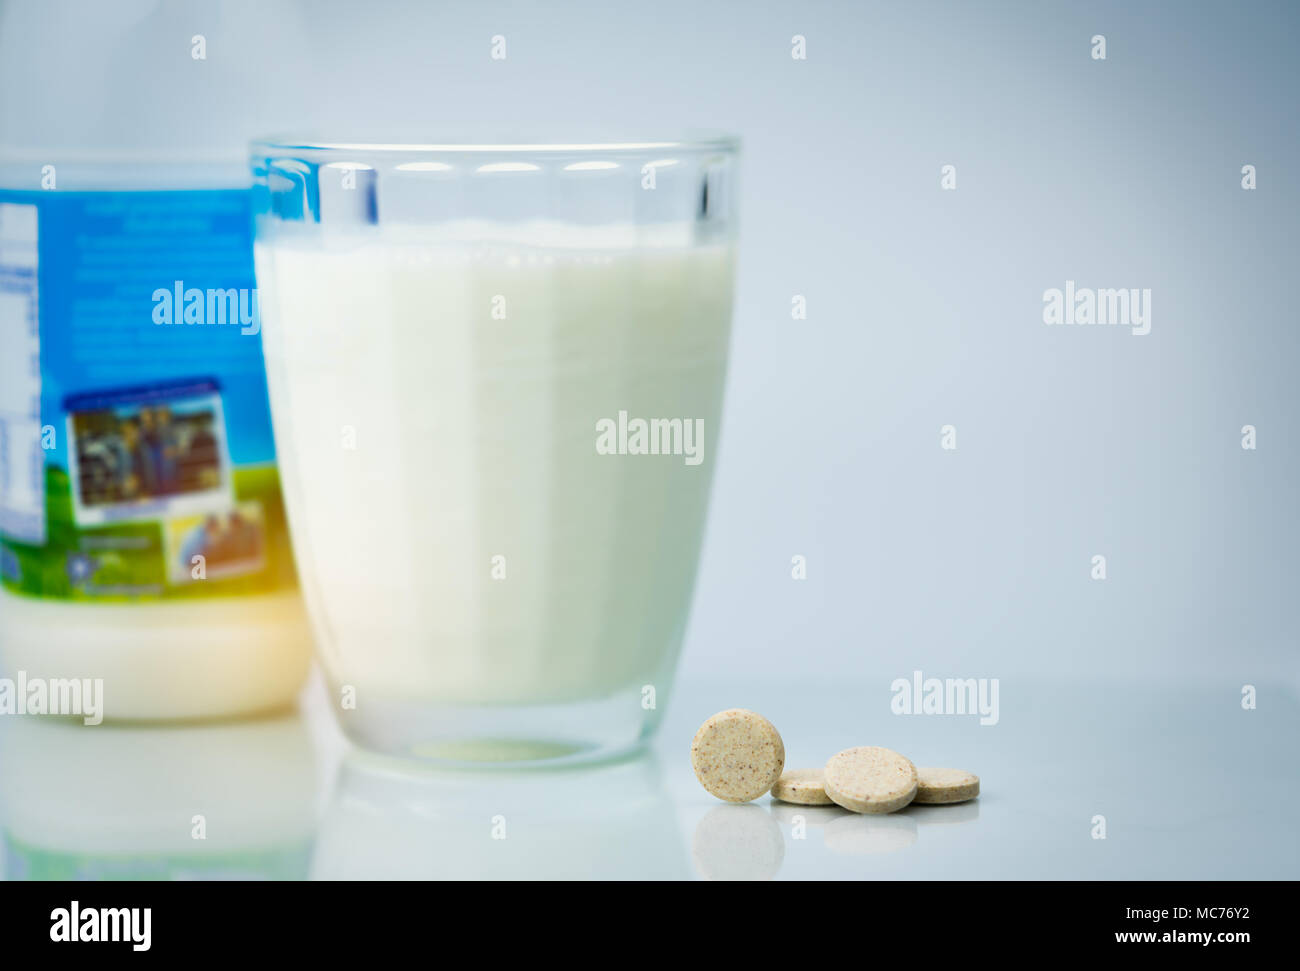 Gesüßt aromatisierte Milch tabletten und ein Glas Milch und  Milcherzeugnisse Flasche auf weißem Hintergrund. Kalzium Lebensmittel aus  Kuhmilch für gesunde Knochen Stockfotografie - Alamy